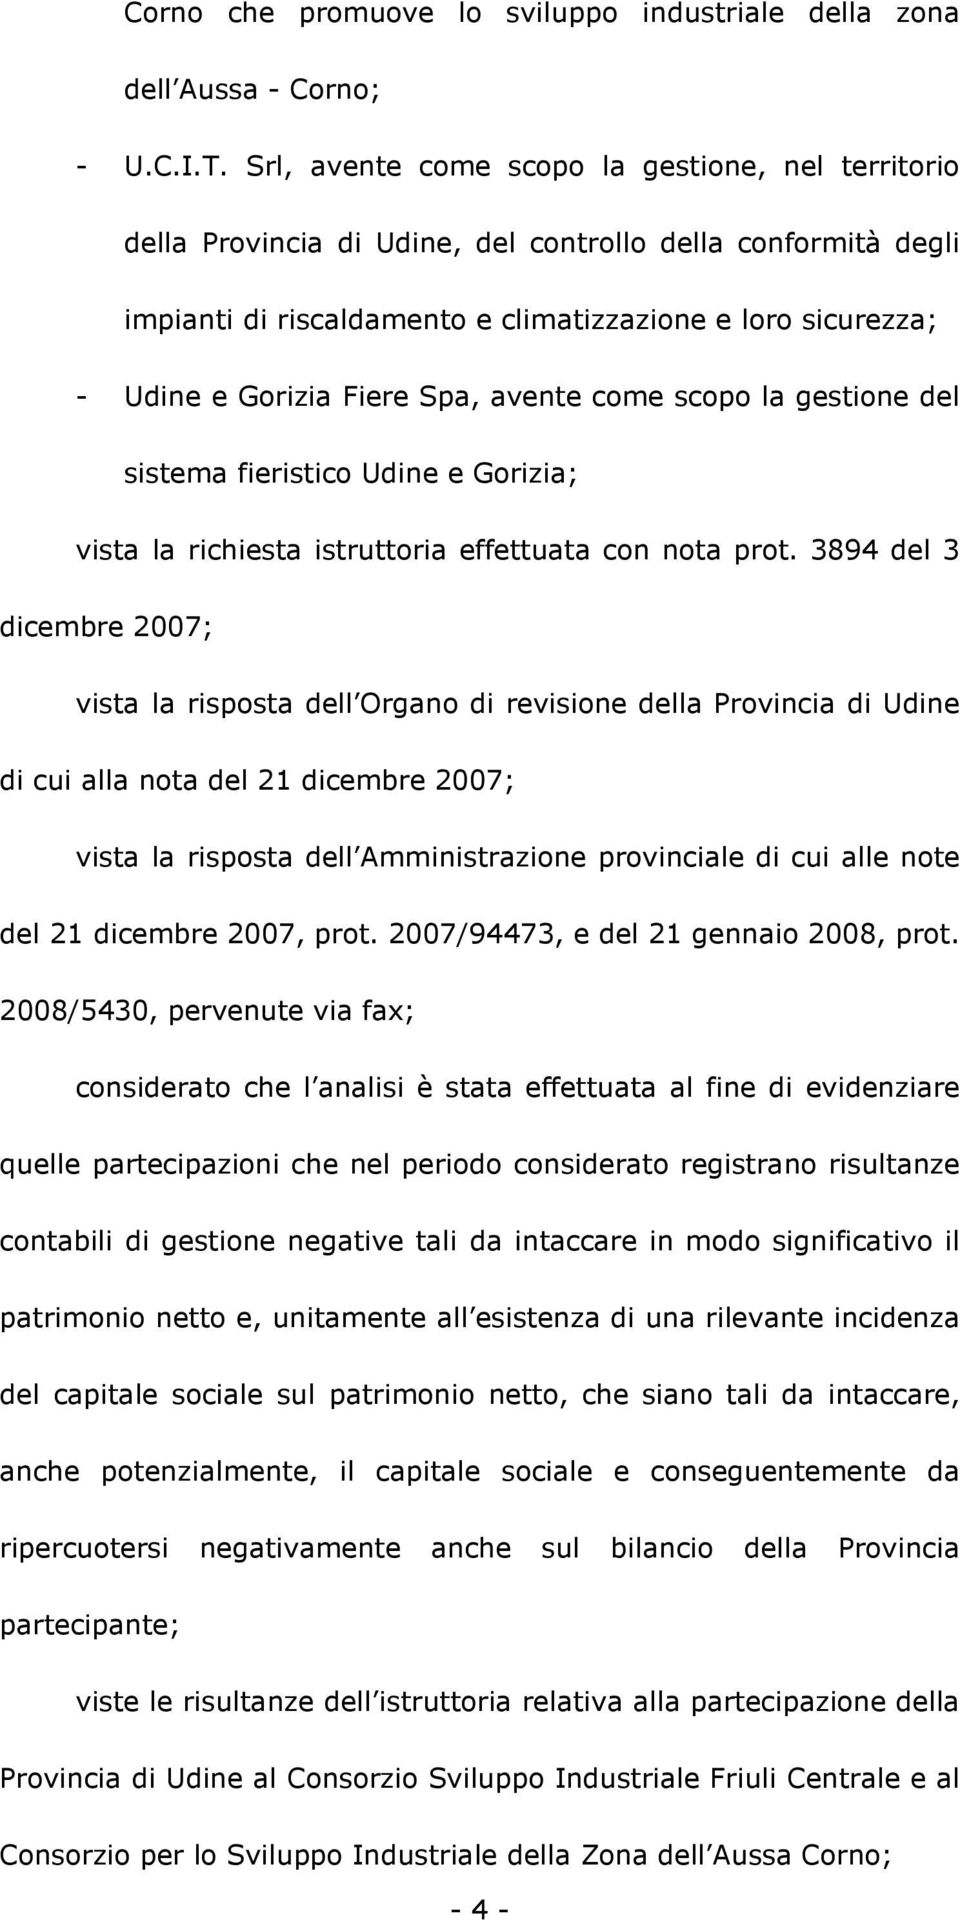 Spa, avente come scopo la gestione del sistema fieristico Udine e Gorizia; vista la richiesta istruttoria effettuata con nota prot.